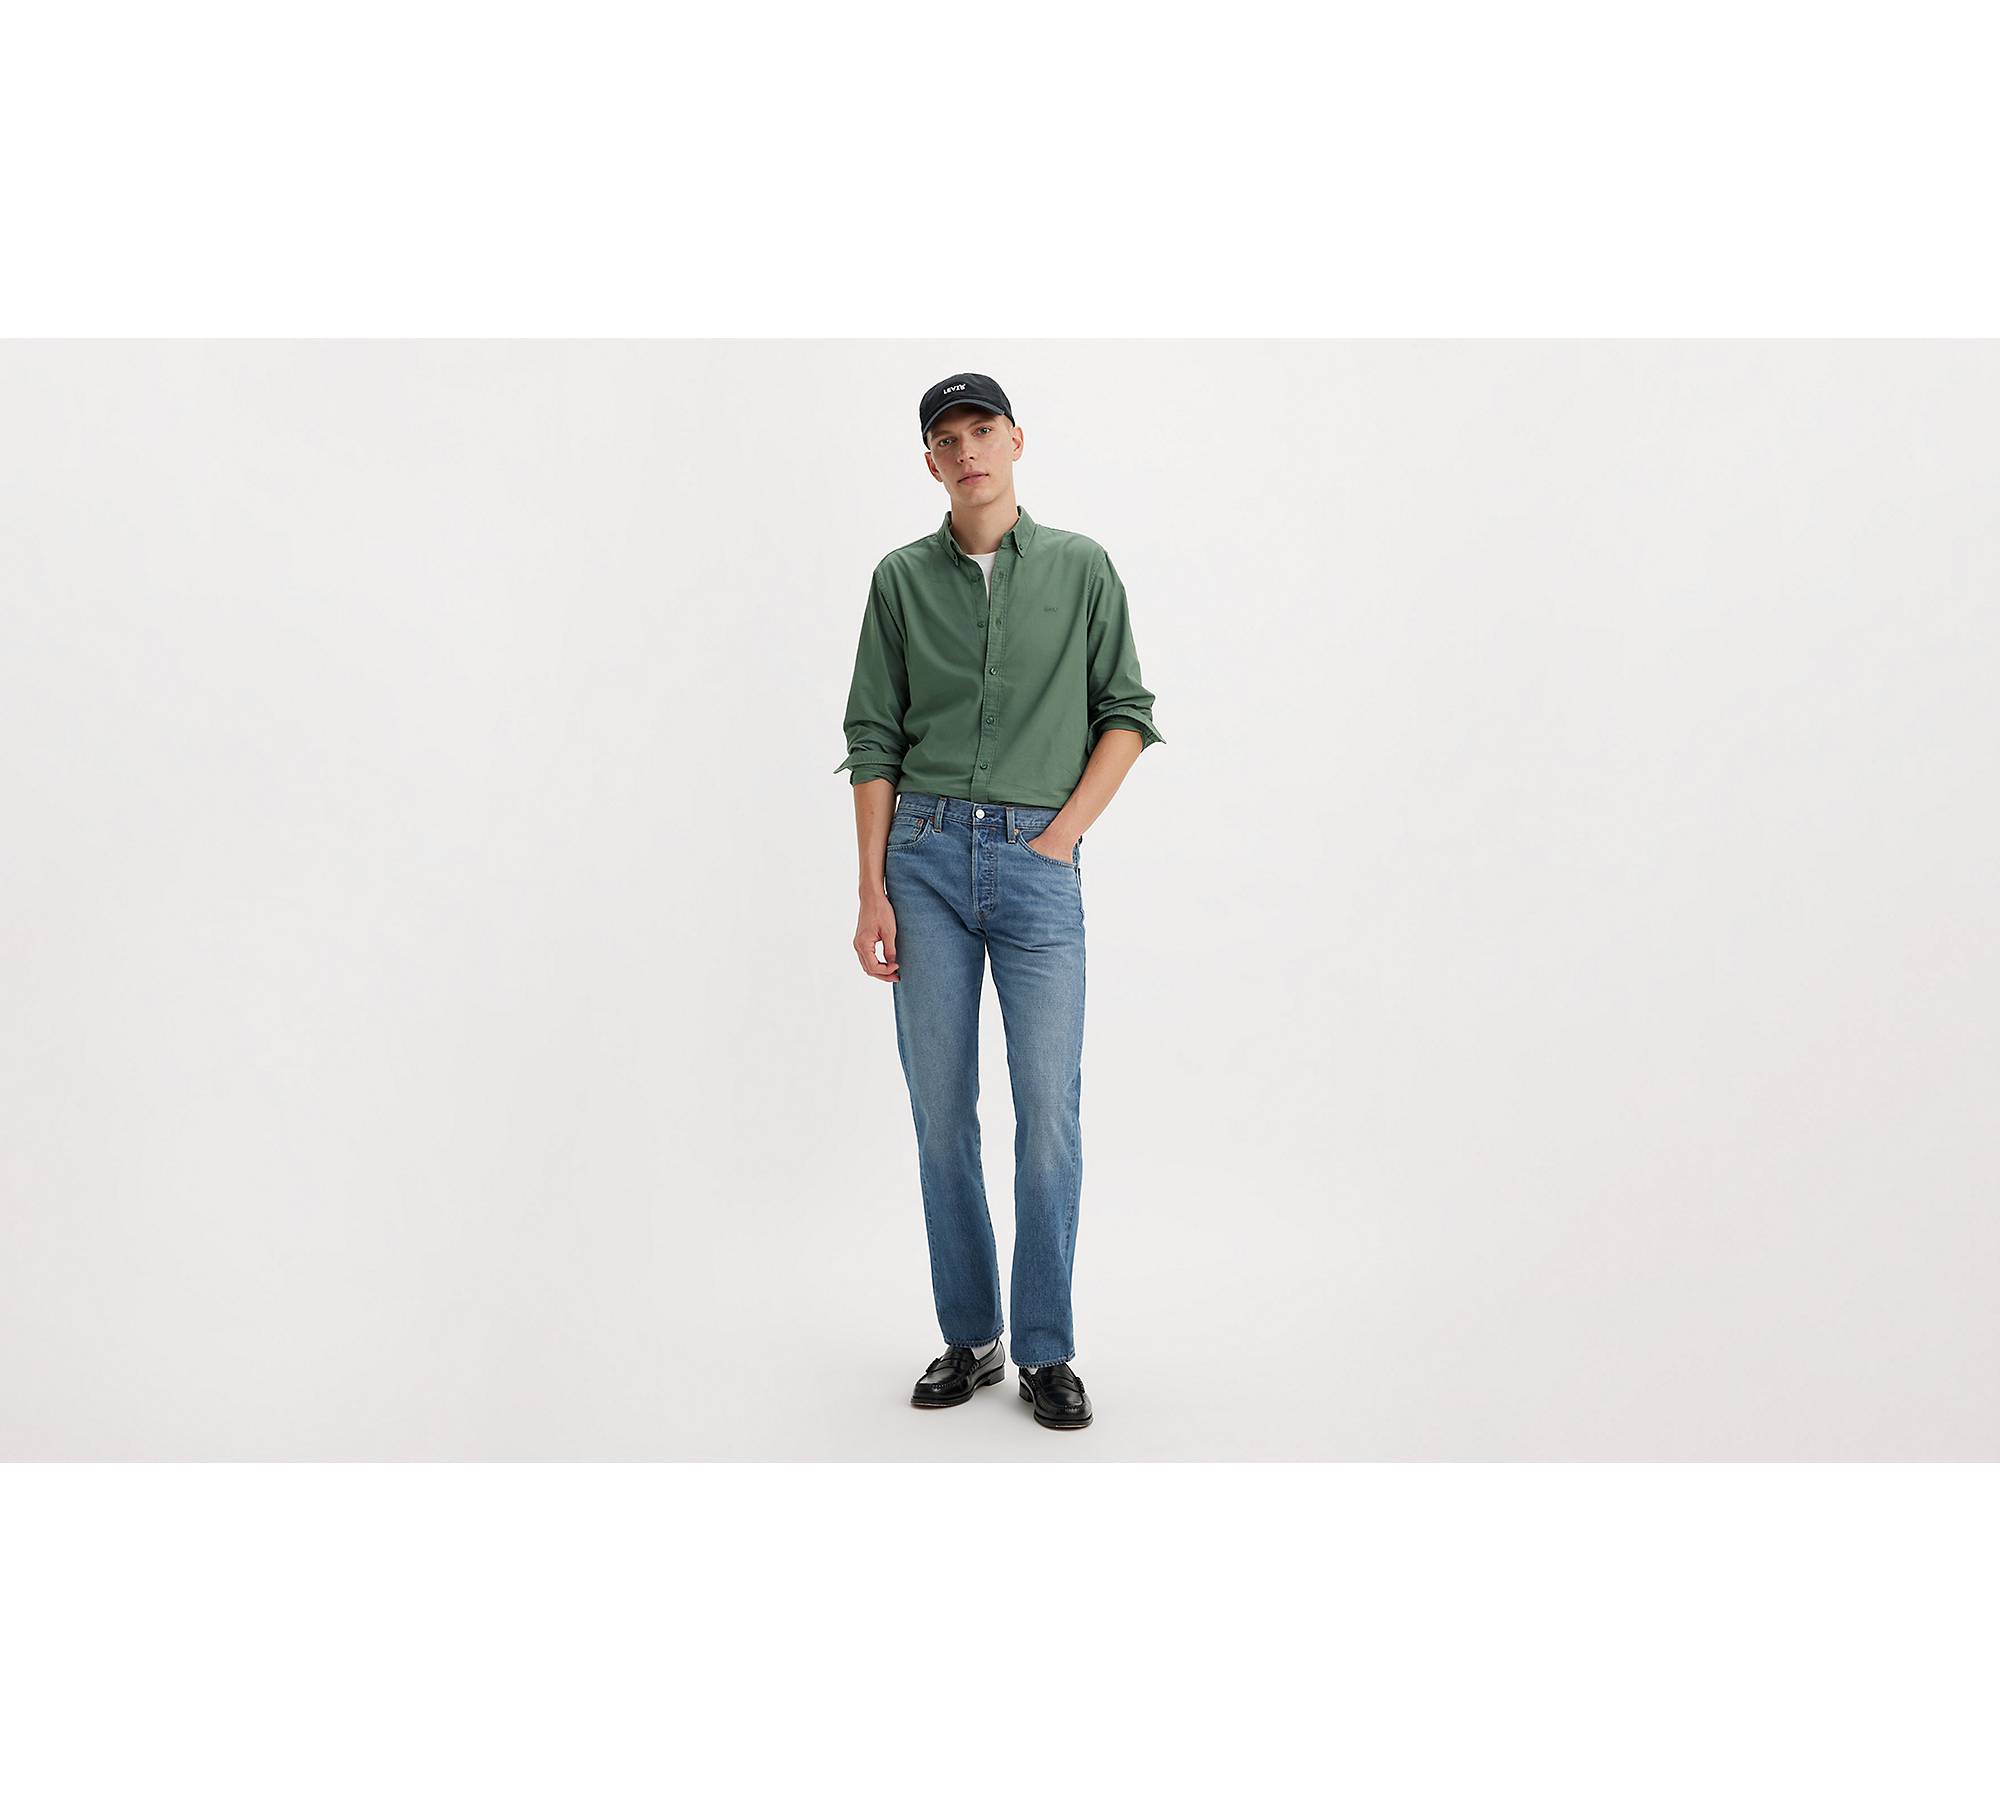 501® Original Fit Selvedge Men's Jeans - Medium Wash | Levi's® US